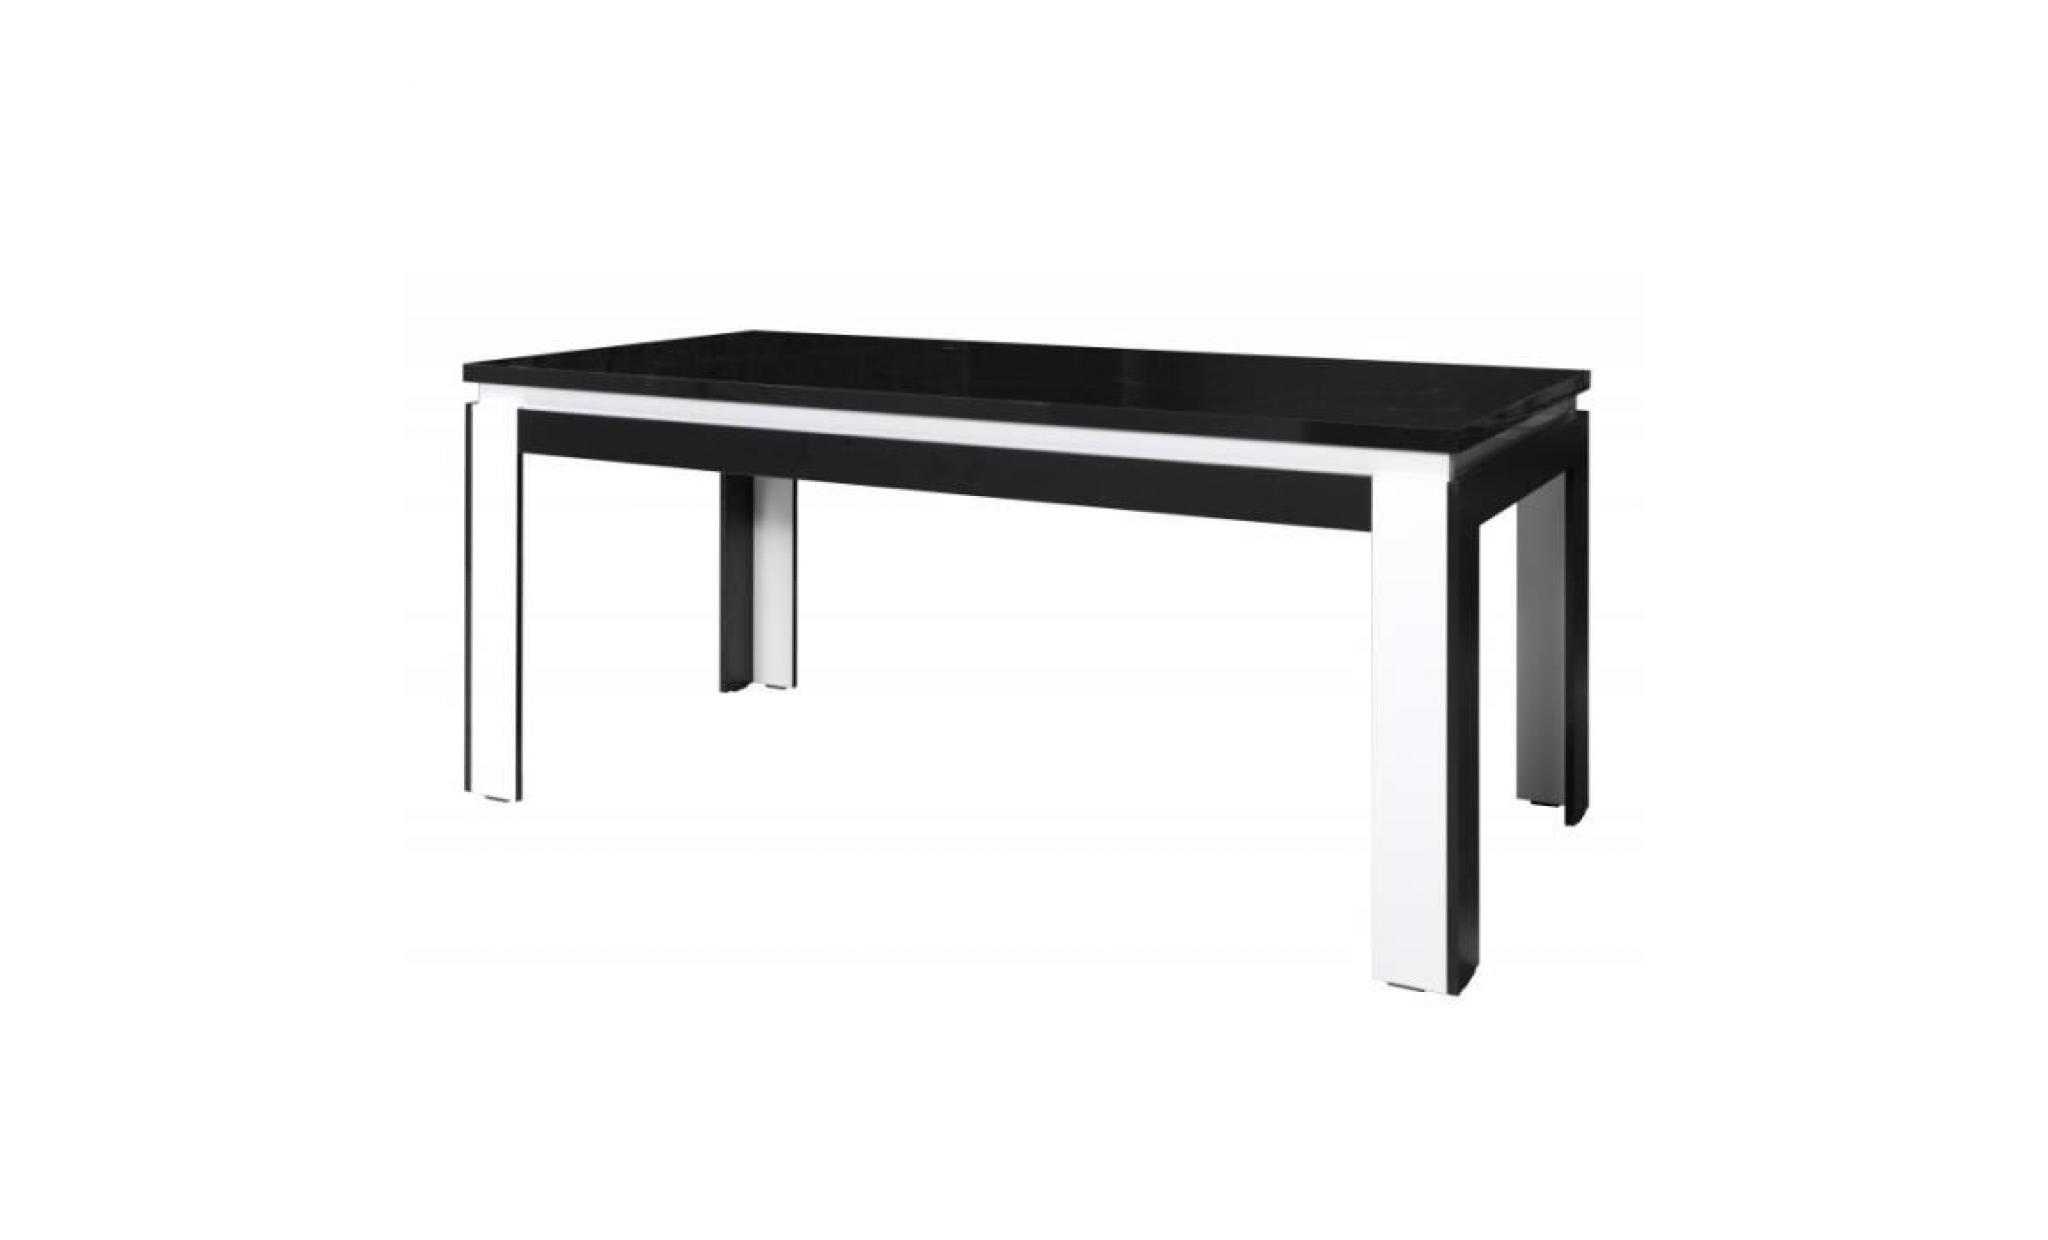 table 160 cm + 6 chaises lina. table pour salle à manger brillante blanche et noire avec 6 chaises simili cuir. meubles design